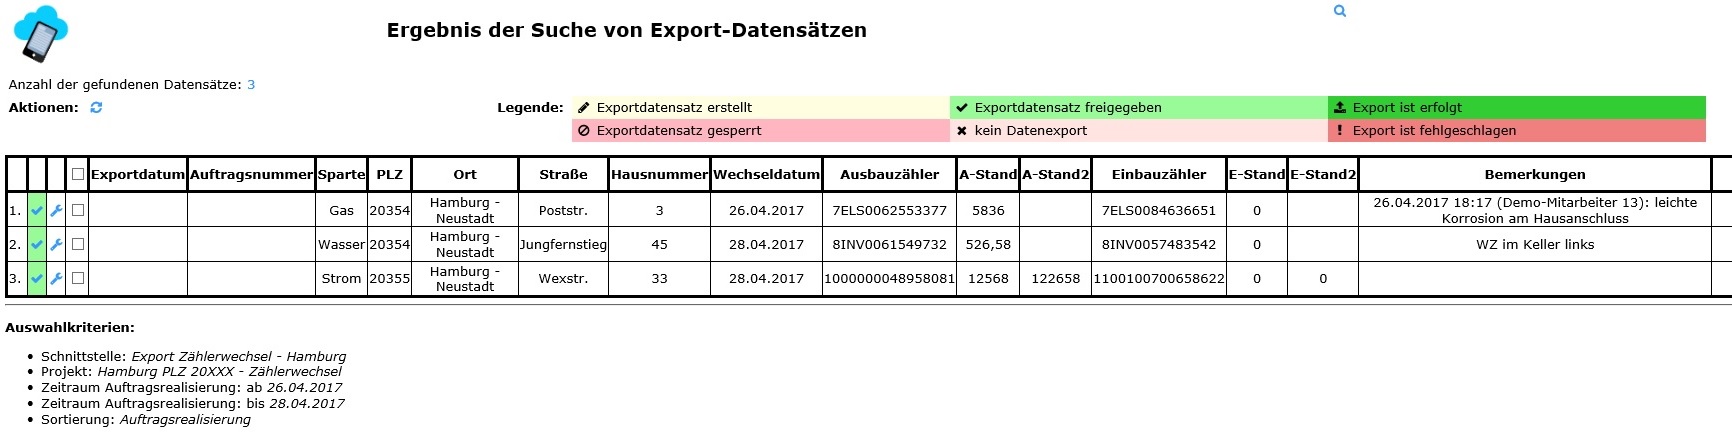 Übersicht Export-Datensätze nach Freigabe